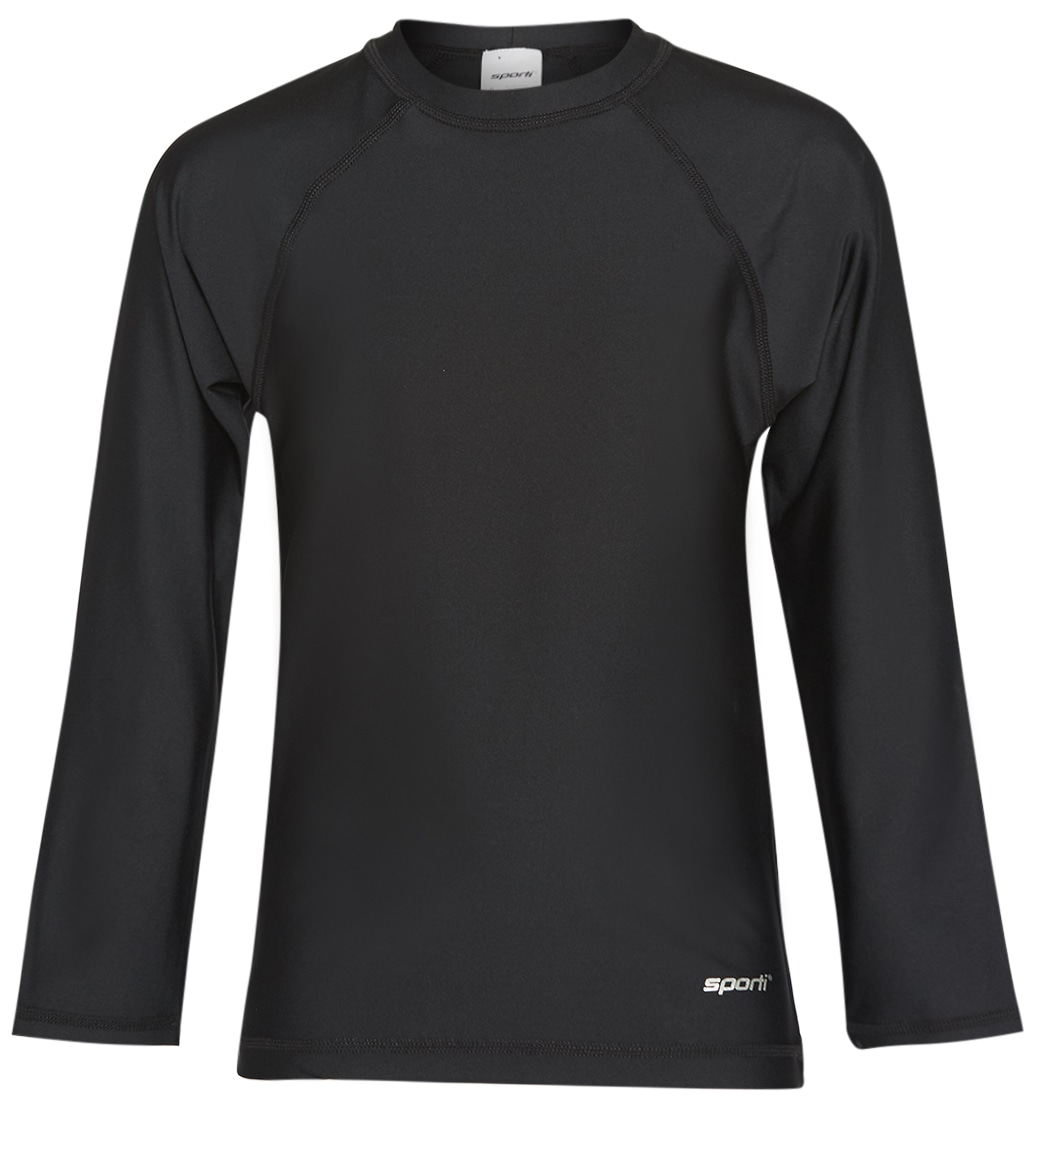 Sporti Youth Men's Long Sleeve Shirt Upf 50+ Comfort Fit Rashguard - Black 10 - Swimoutlet.com